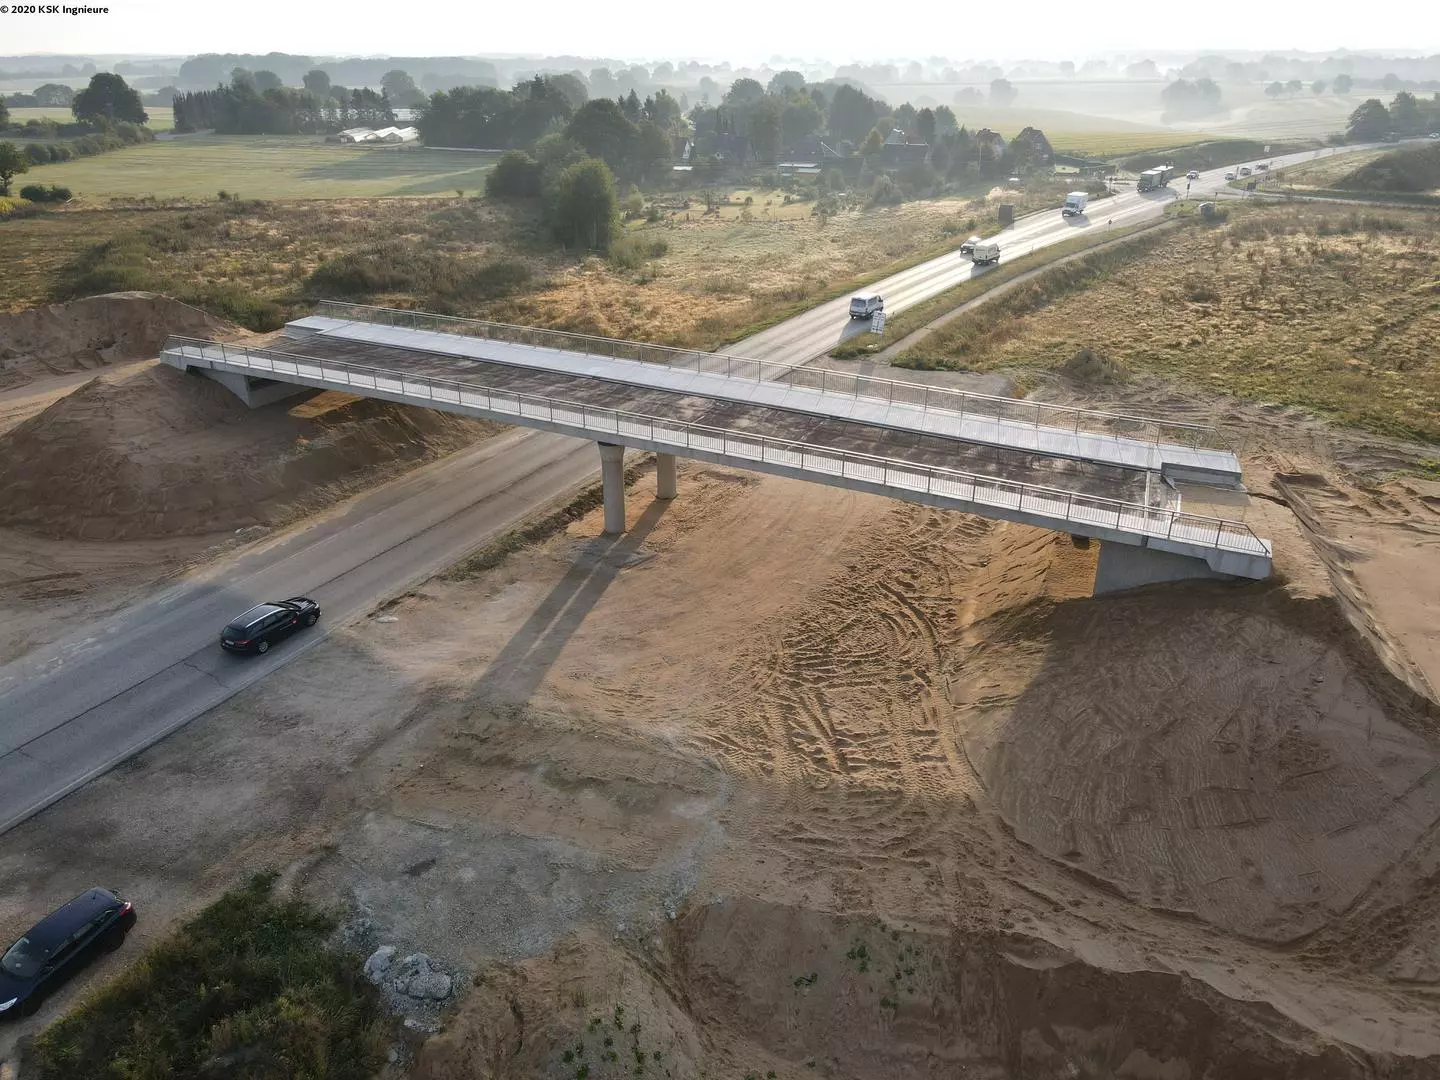 3D-Animation des Brückenbauwerkes durch die KSK Ingenieure